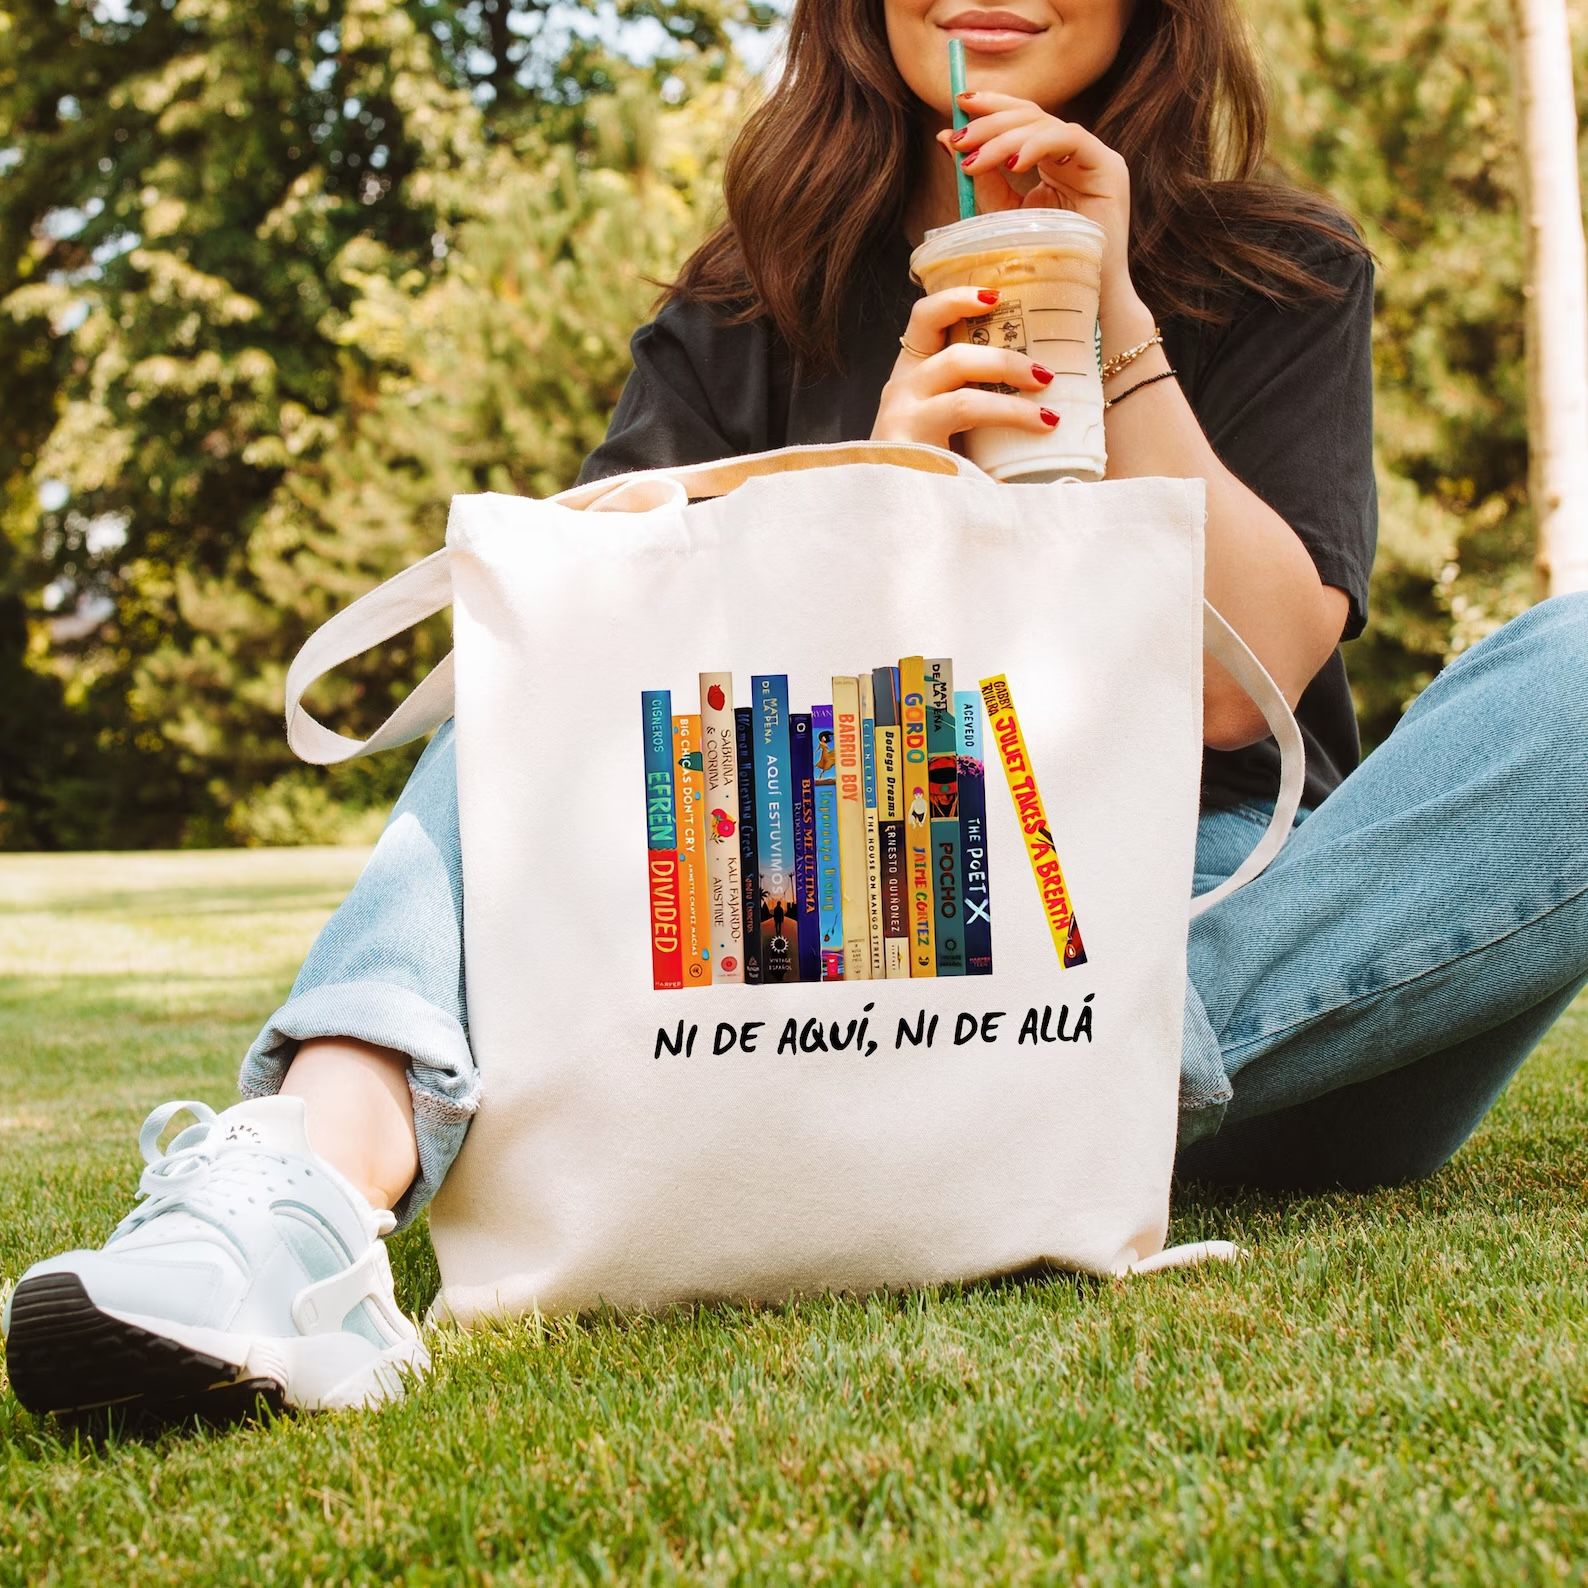 canvas tote bag with a design of colorful book spines. Beneath the books are the words "ni de aqui, ni de alla"